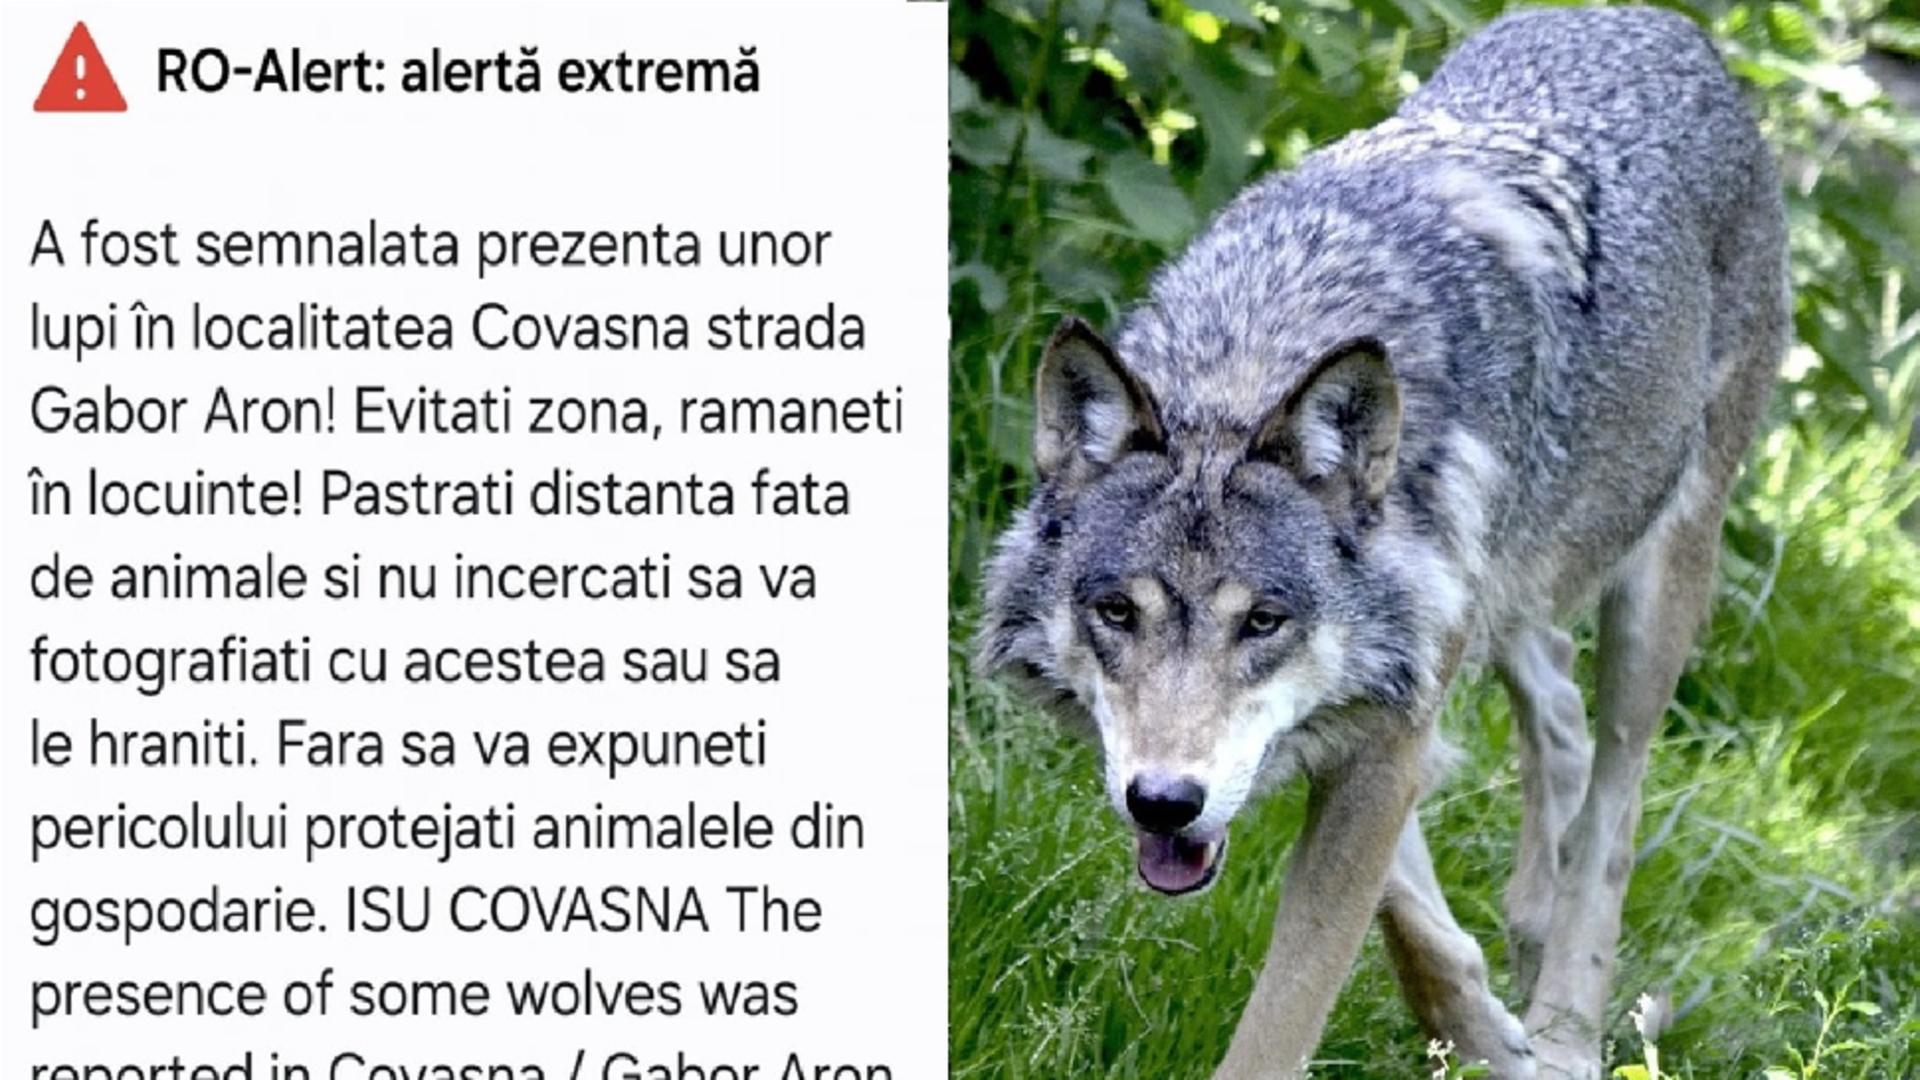 Lupii dau târcoale caselor din Covasna. RO-ALERT a avertizat localnicii printr-o alertă extremă